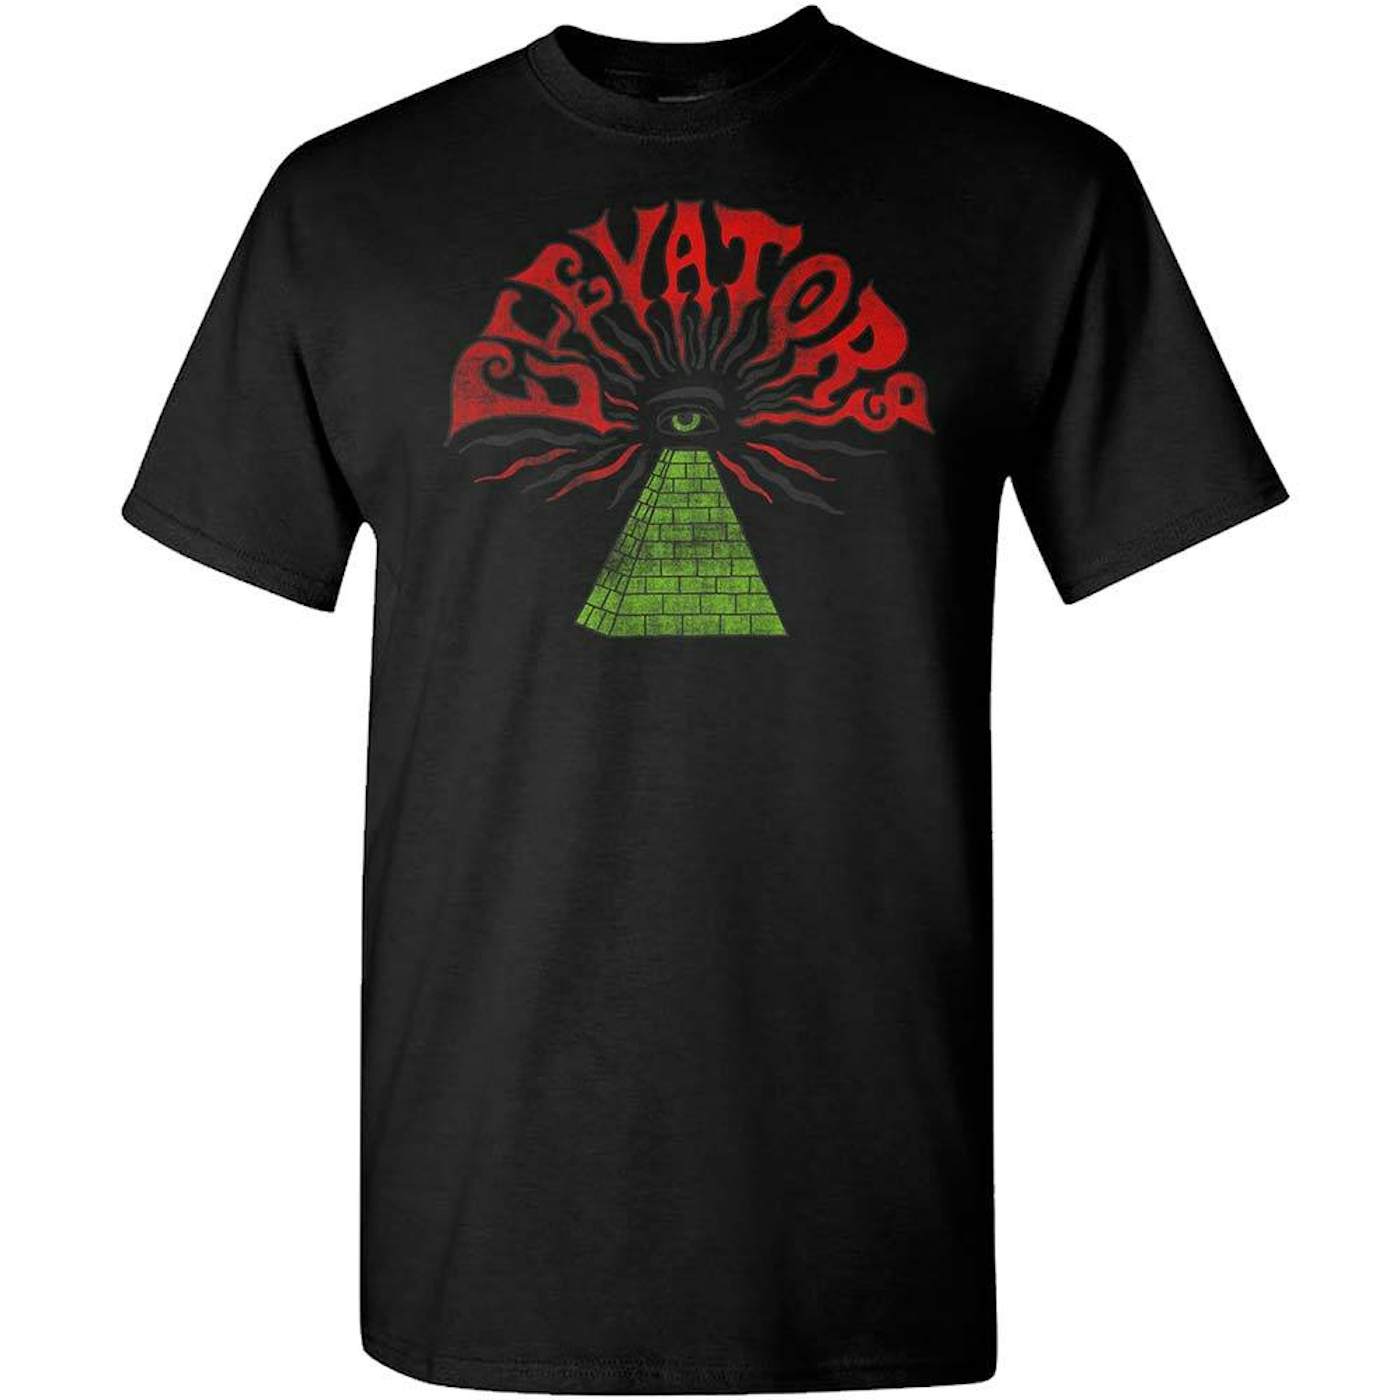 Roky Erickson Elevators Pyramid Eye Black T-Shirt